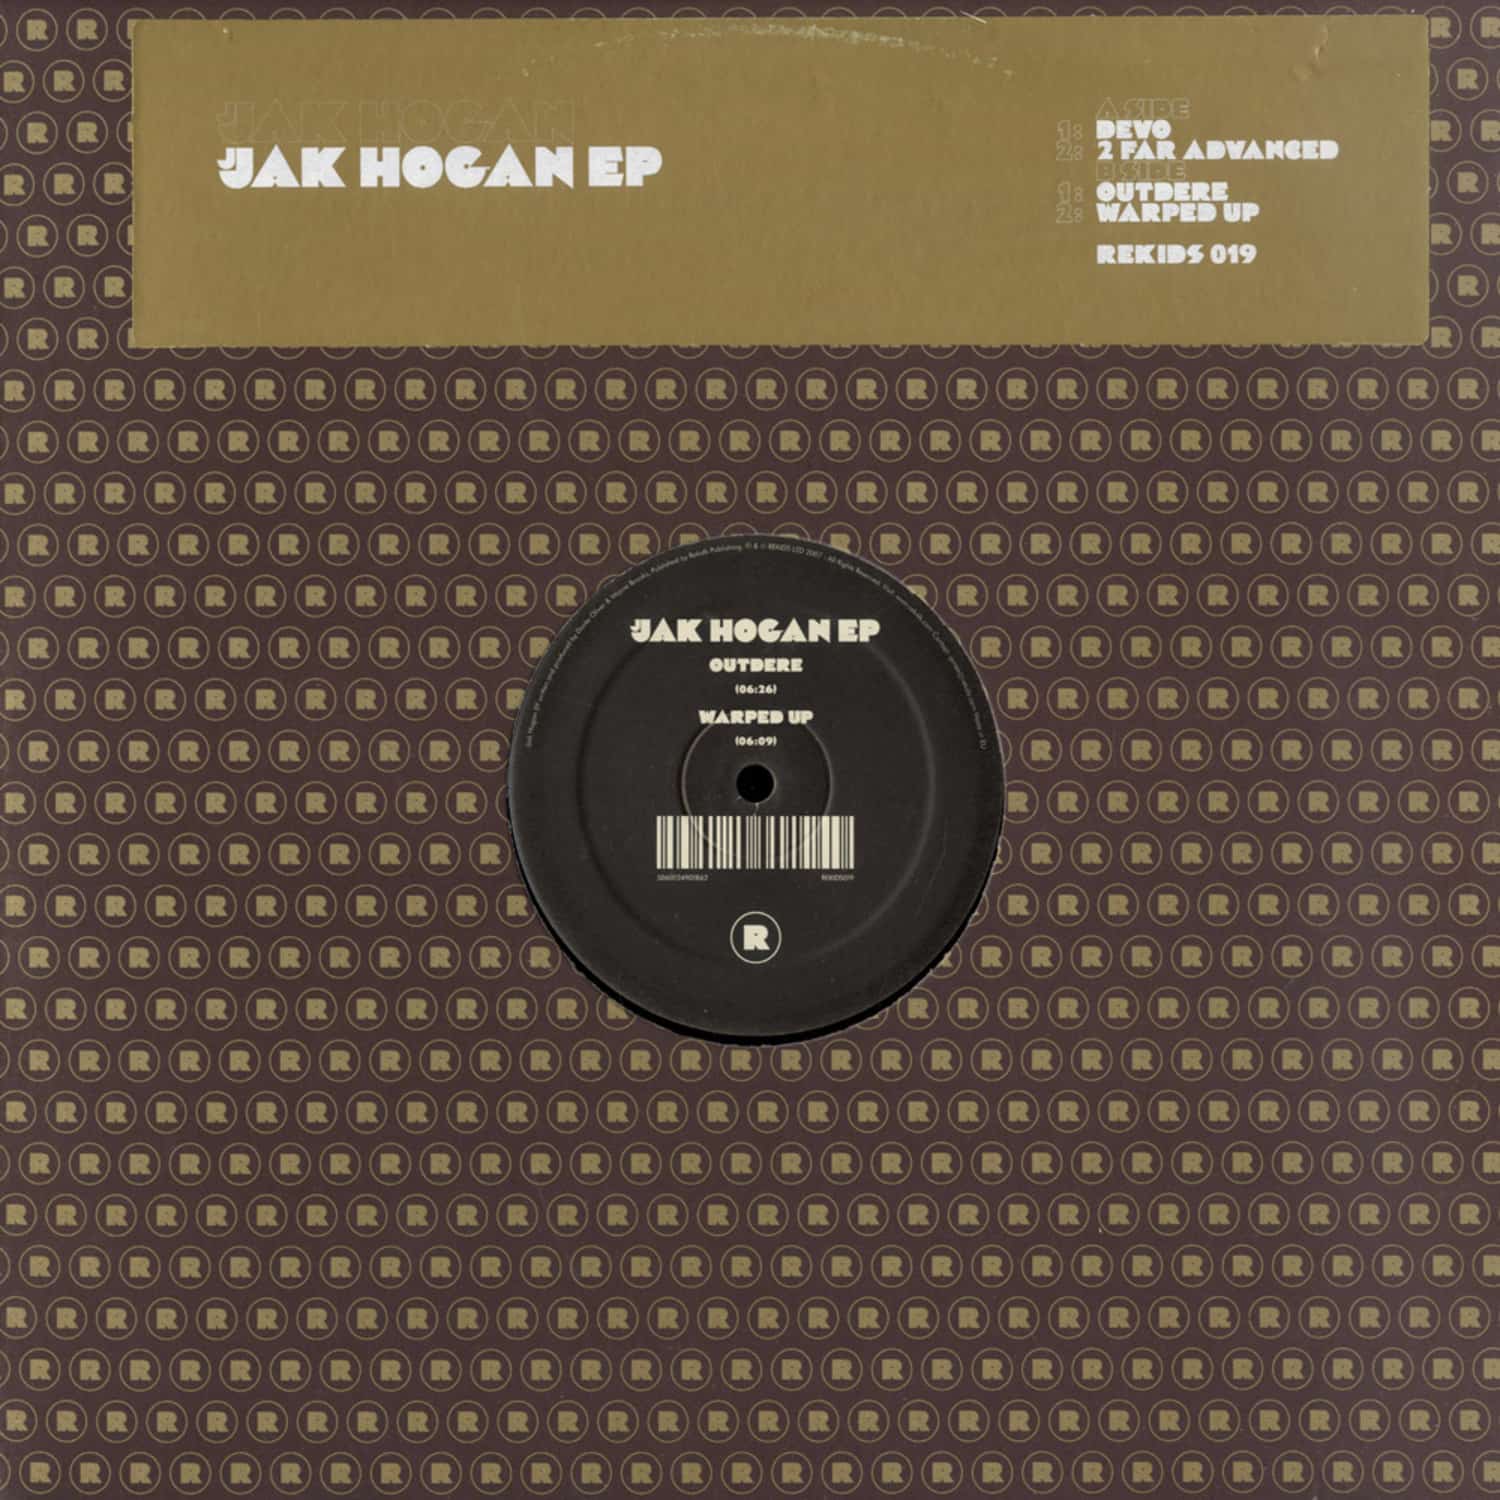 Jjak Hogan - EP